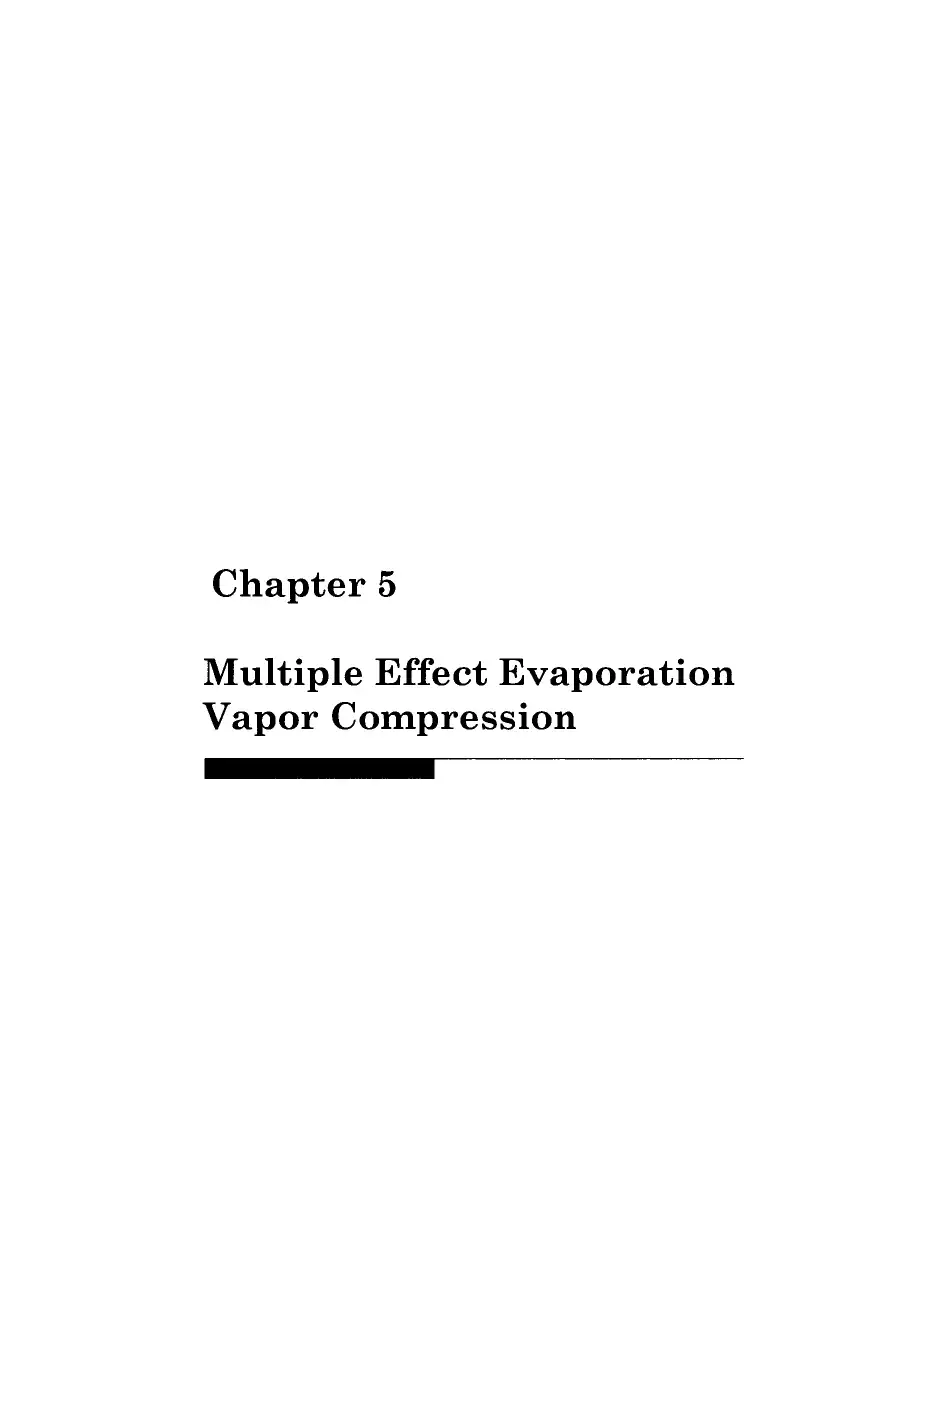 Chapter 5 Multiple Effect Evaporation Vapor Compression